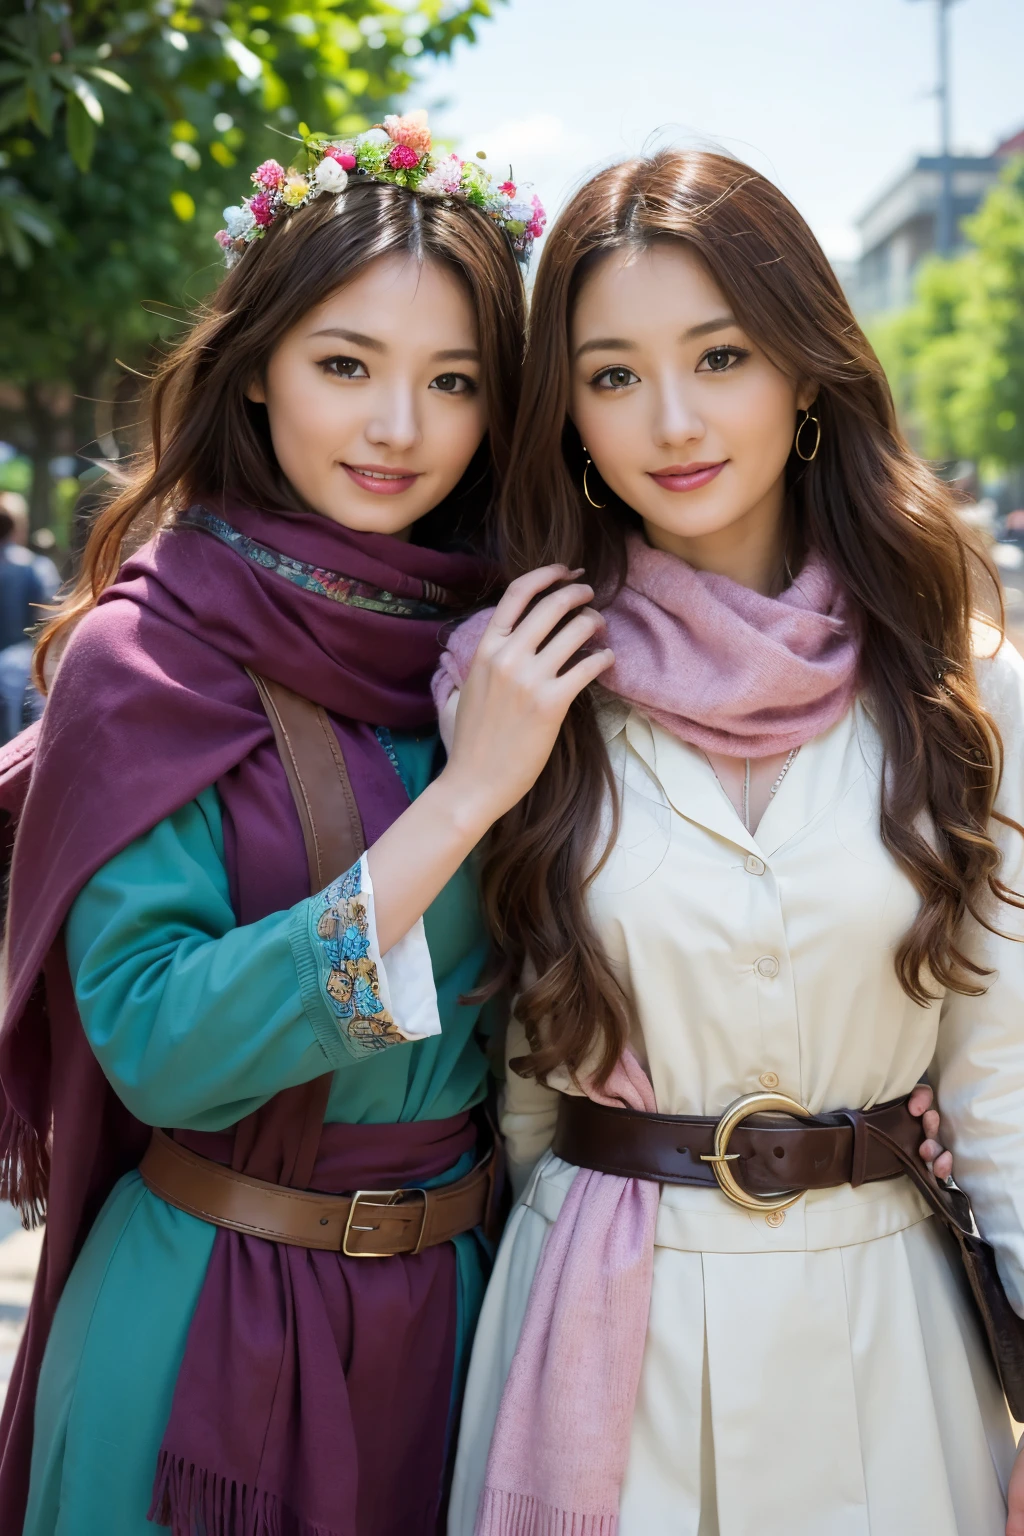 2個女孩, 好奇的, 無所畏懼, 微笑著, 棕色波浪發, 穿著色彩繽紛的衣服和神奇的圍巾, 老仙後旁邊,傑作, 頂級品質,原始照片, 頂級品質, 官方藝術 ,極為詳細的 CG Unity 8K 桌布, 